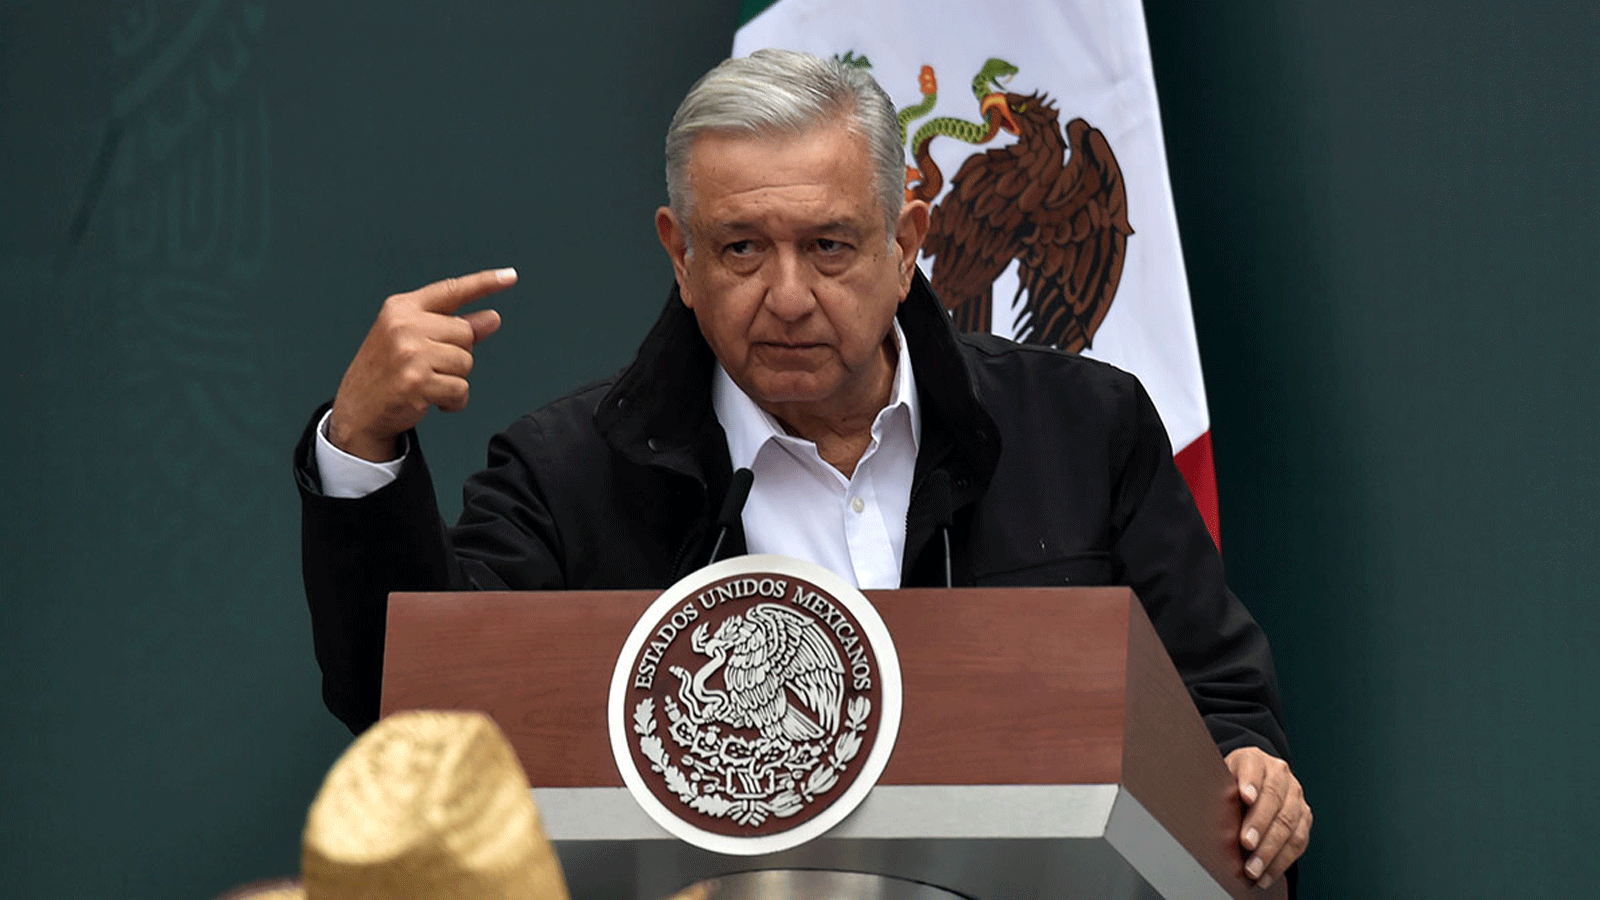 الرئيس المكسيكي أندريس مانويل لوبيز أوبرادور(صورة أرشيفية)